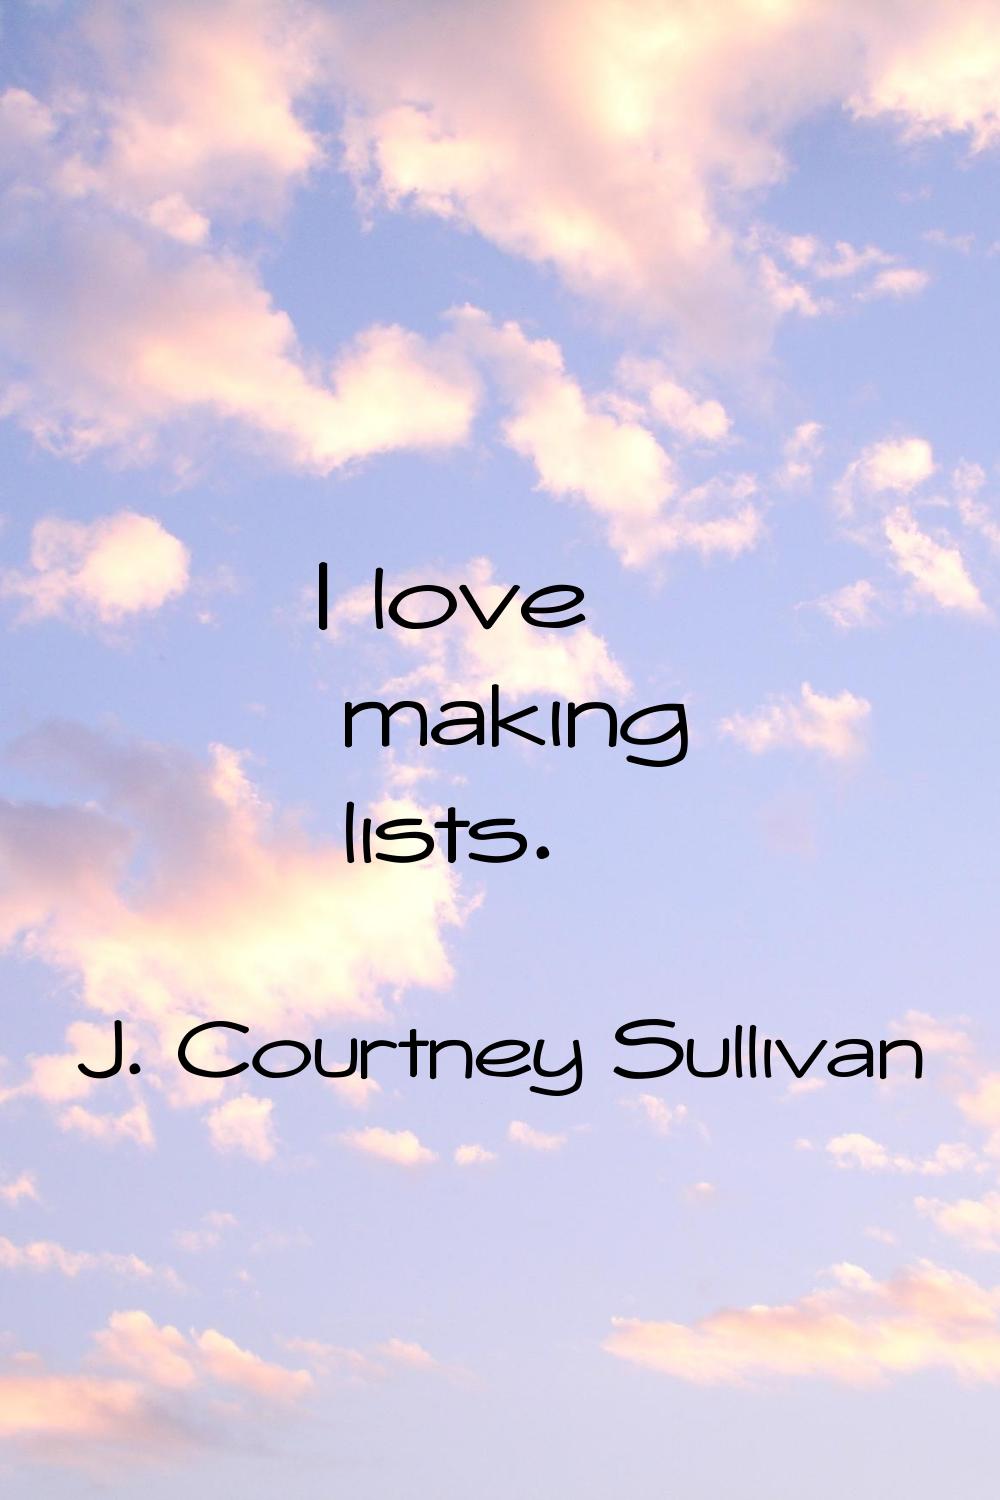 I love making lists.